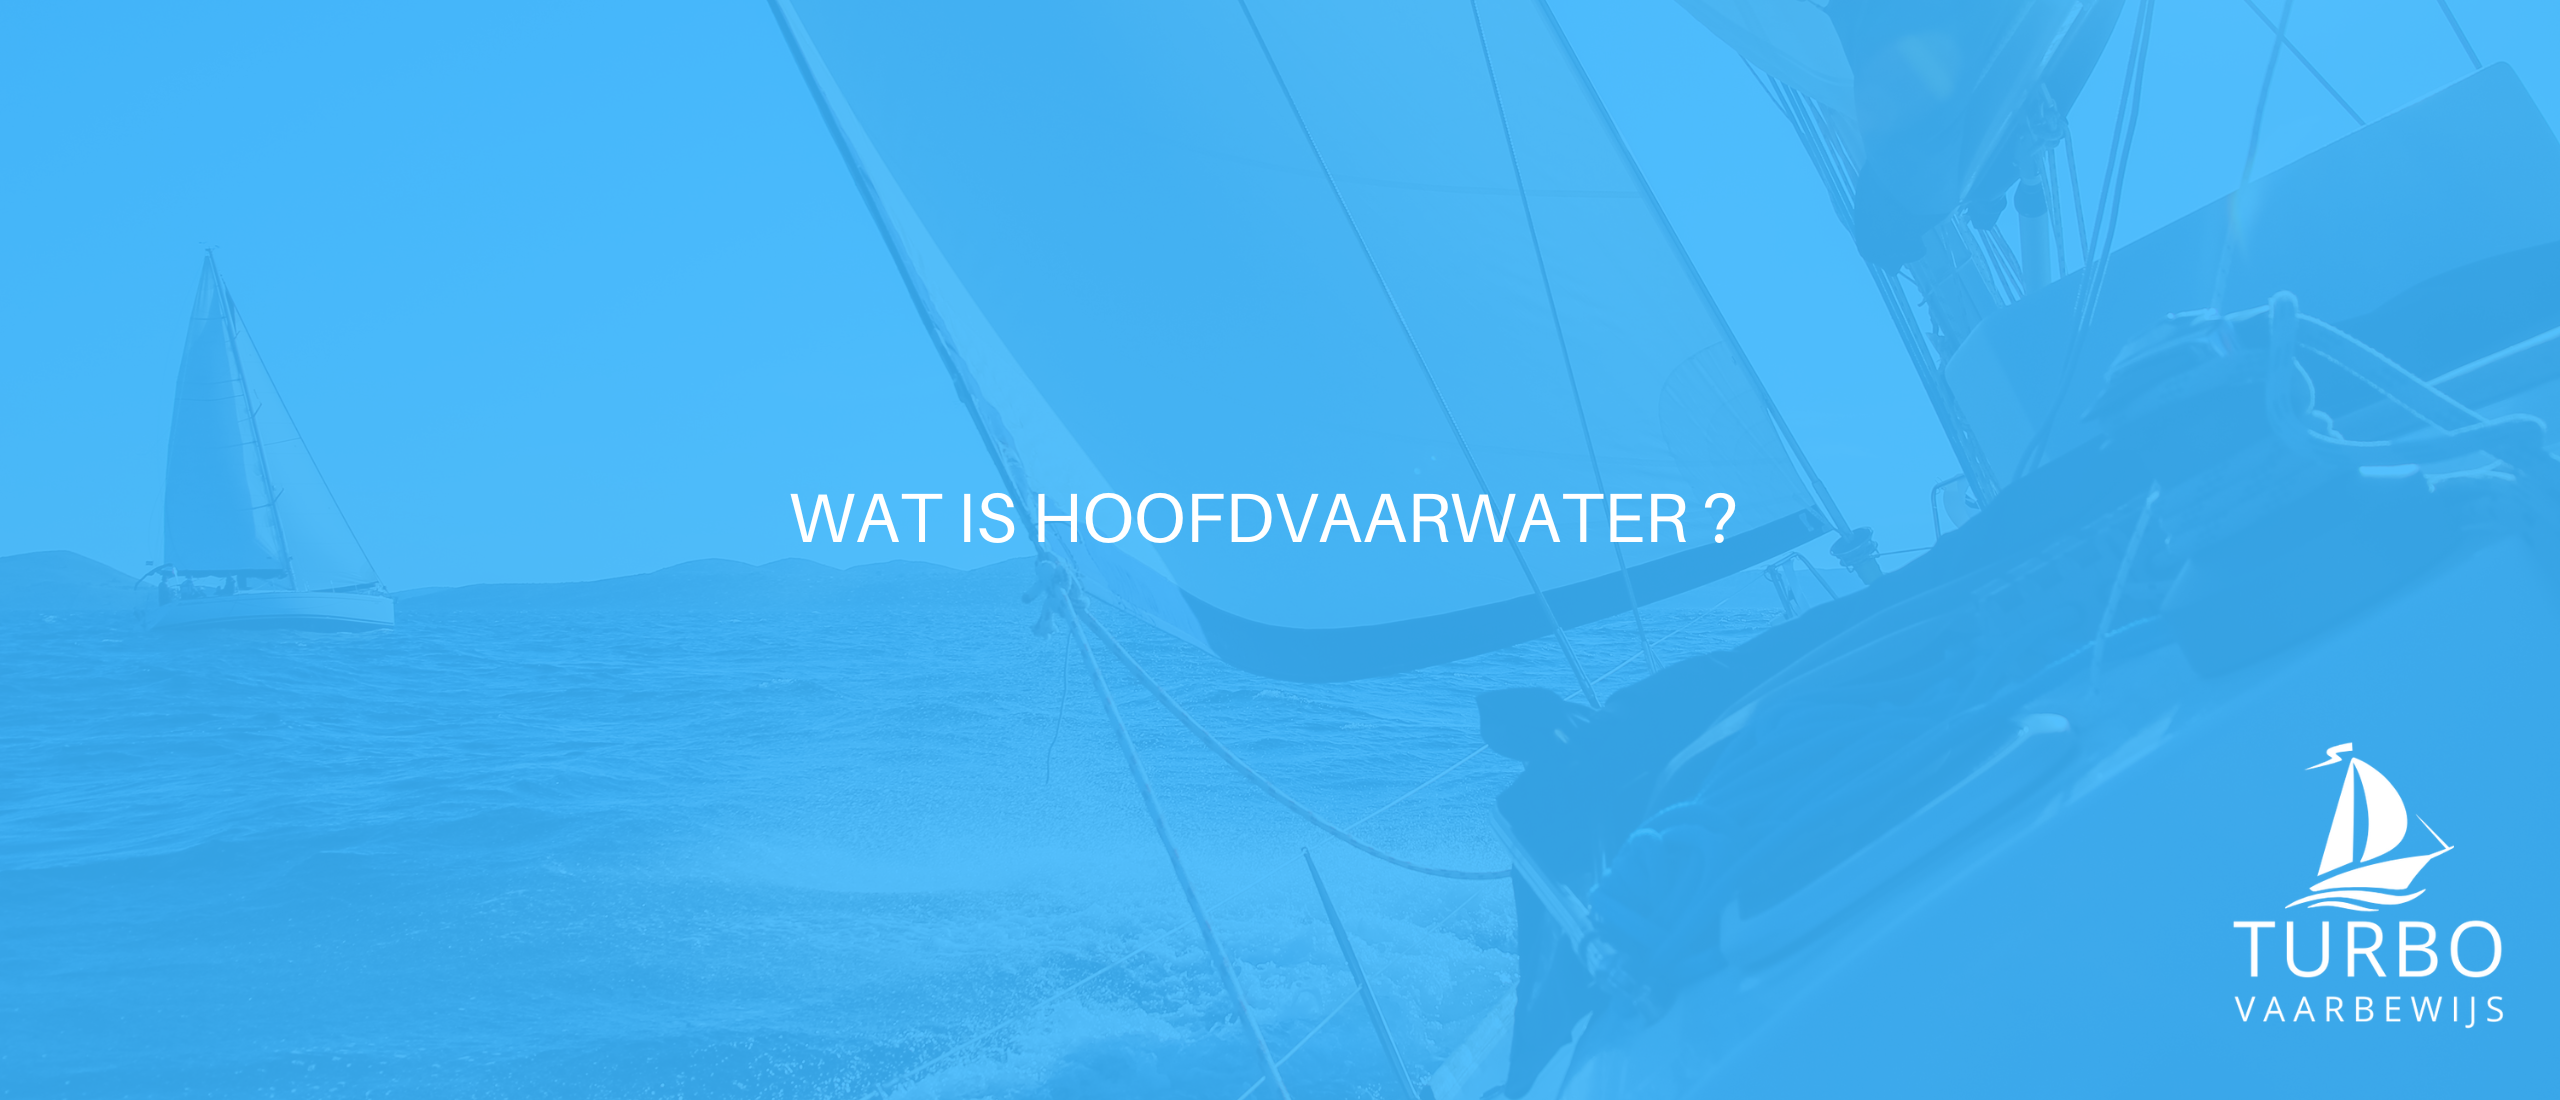 Wat is hoofdvaarwater?